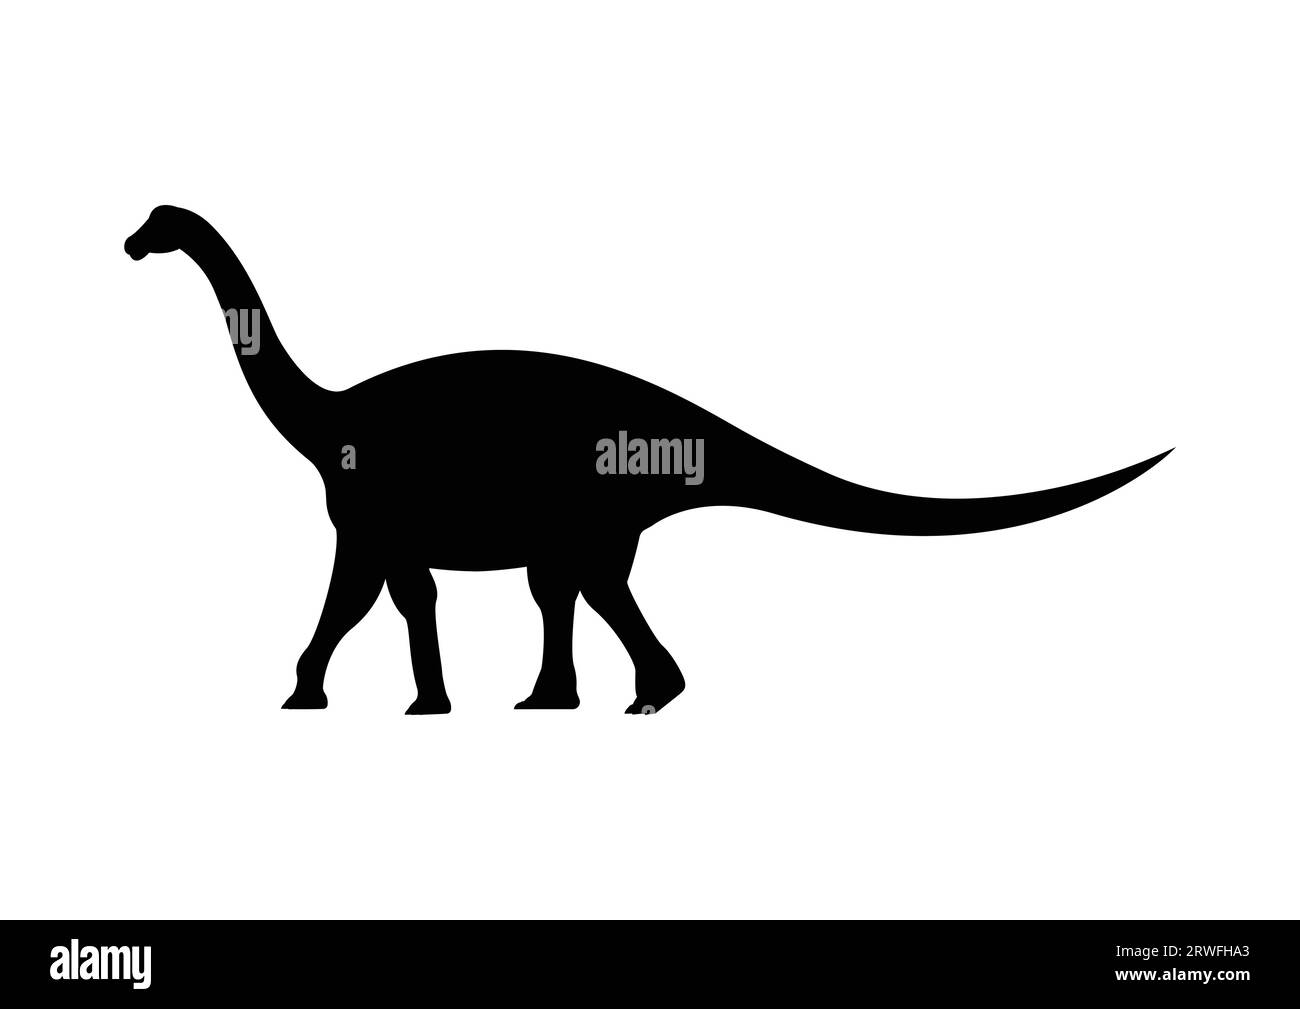 Lirainosaurus Dinosaur Silhouette Vector Isolated on White Background Stock Vector